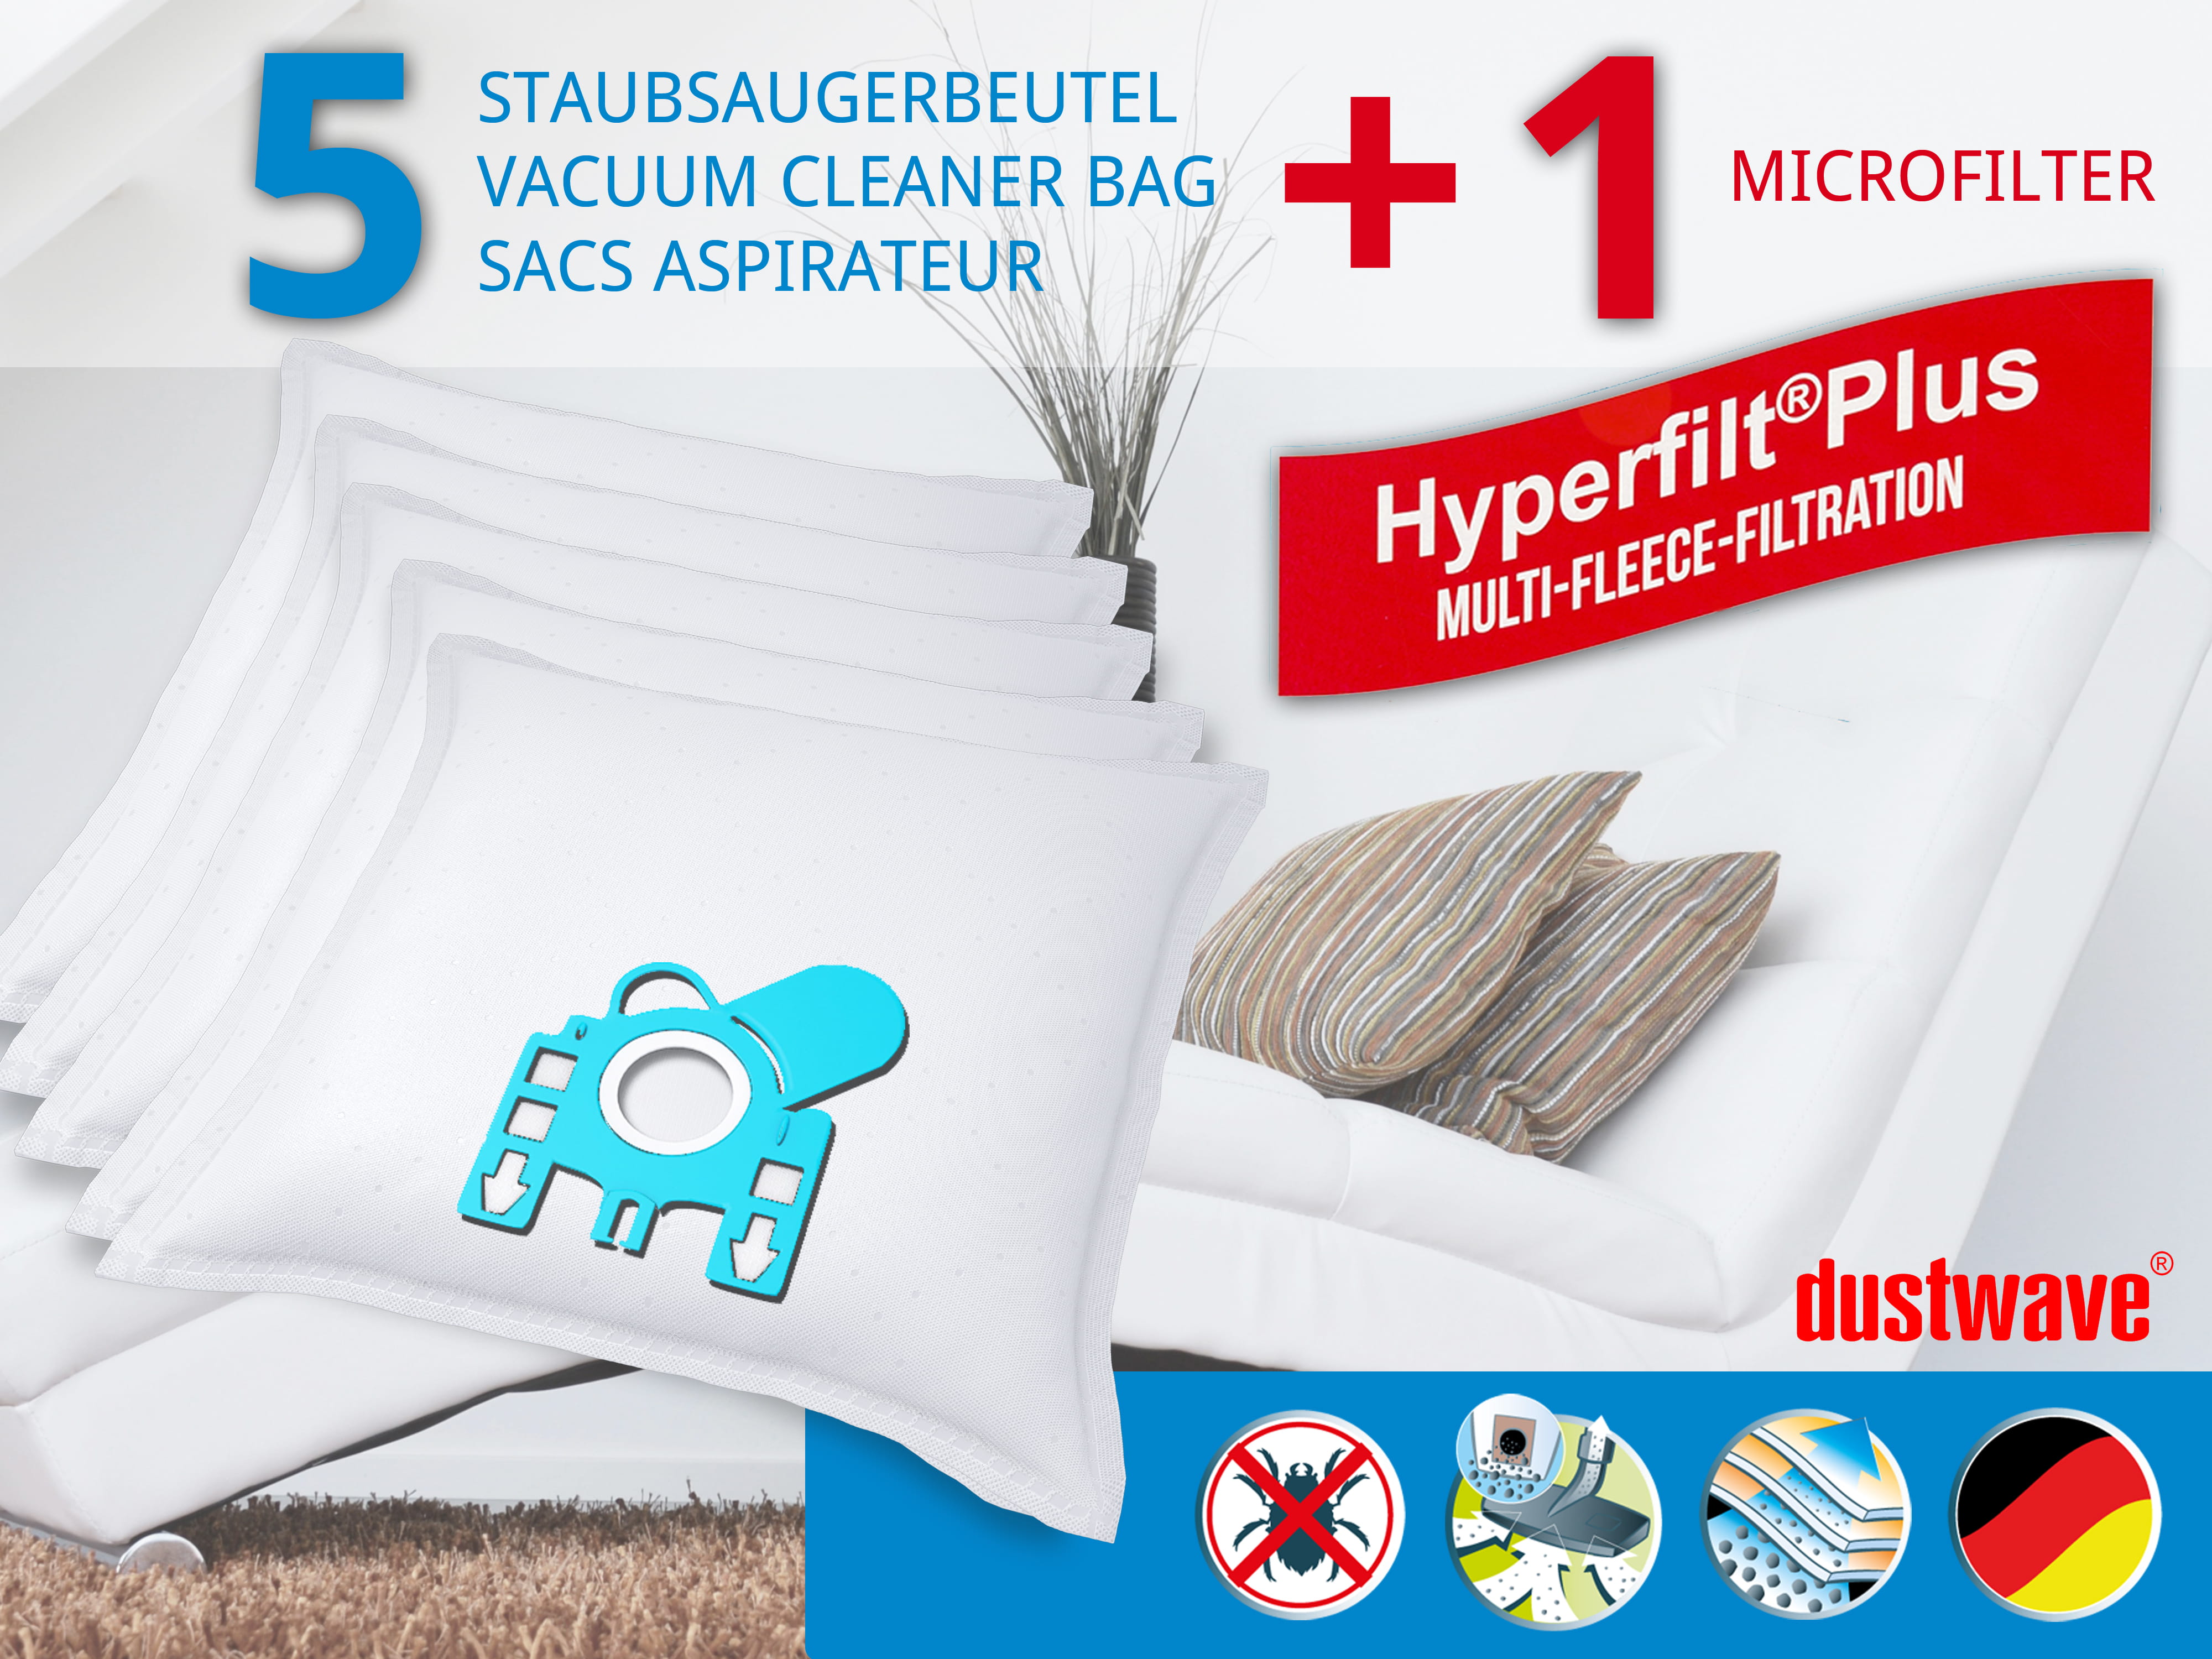 Dustwave® 5 Staubsaugerbeutel für Miele Mondia - hocheffizient, mehrlagiges Mikrovlies mit Hygieneverschluss - Made in Germany